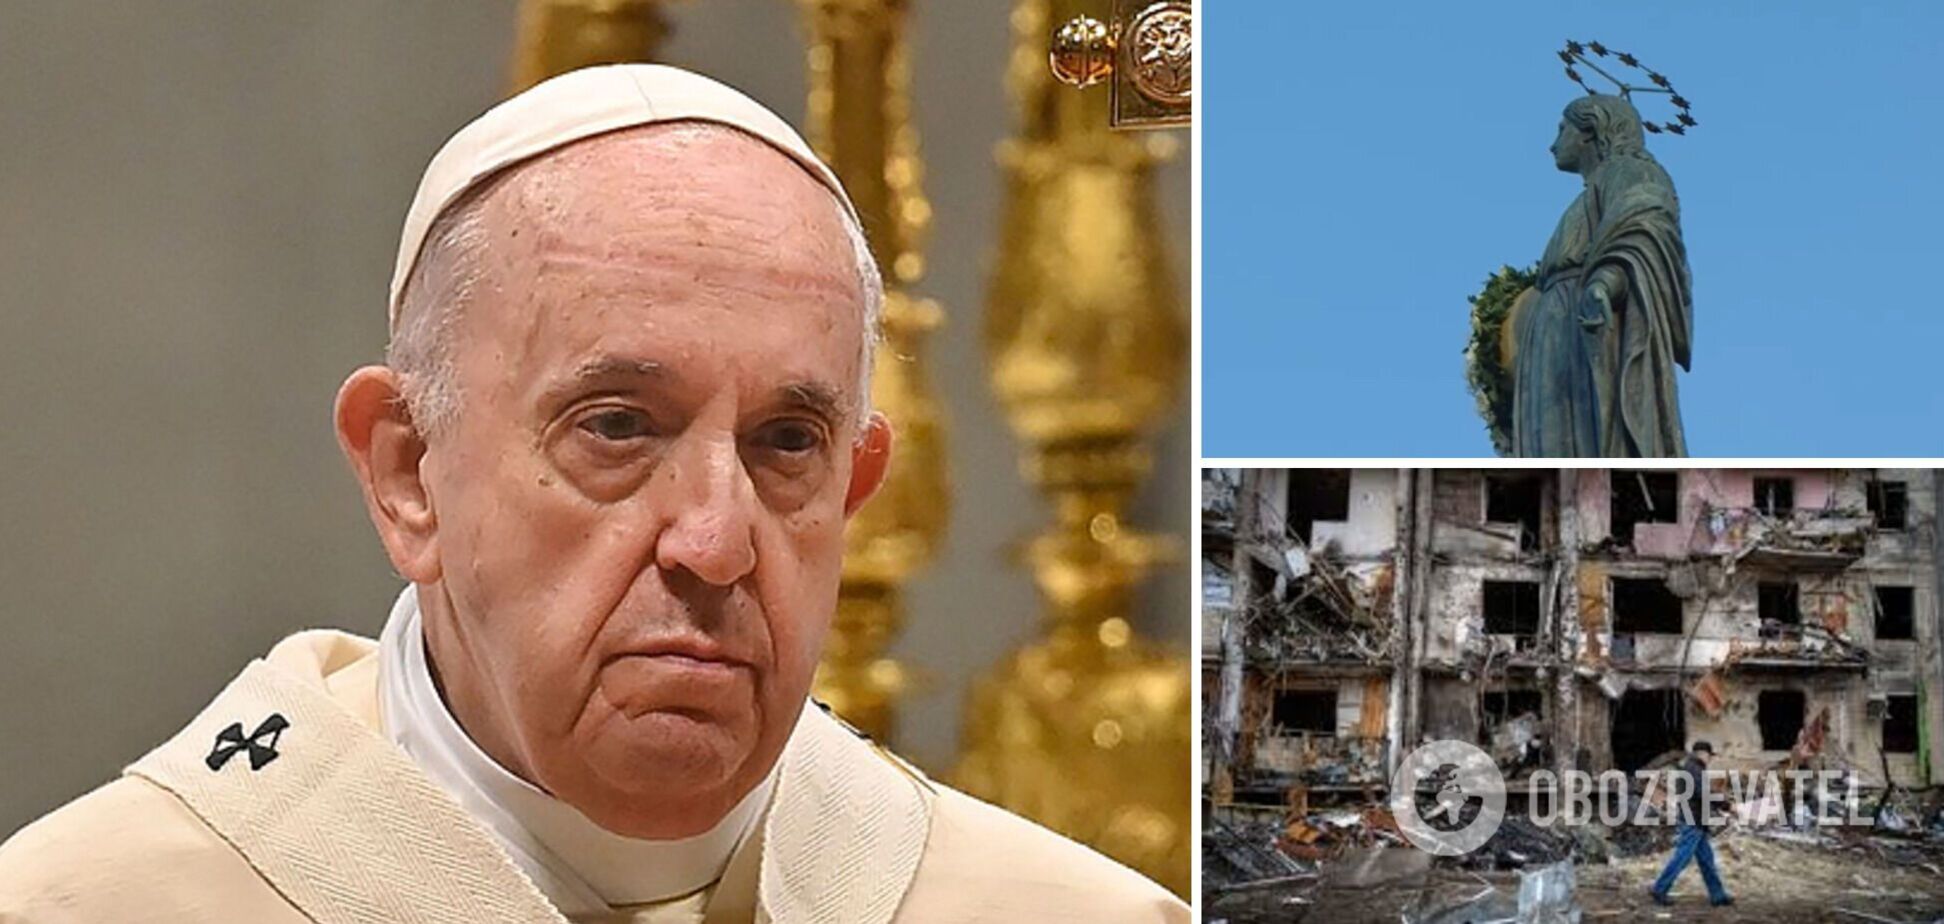 Папа Римский разрыдался, вспомнив в молитве о народе Украины. Видео